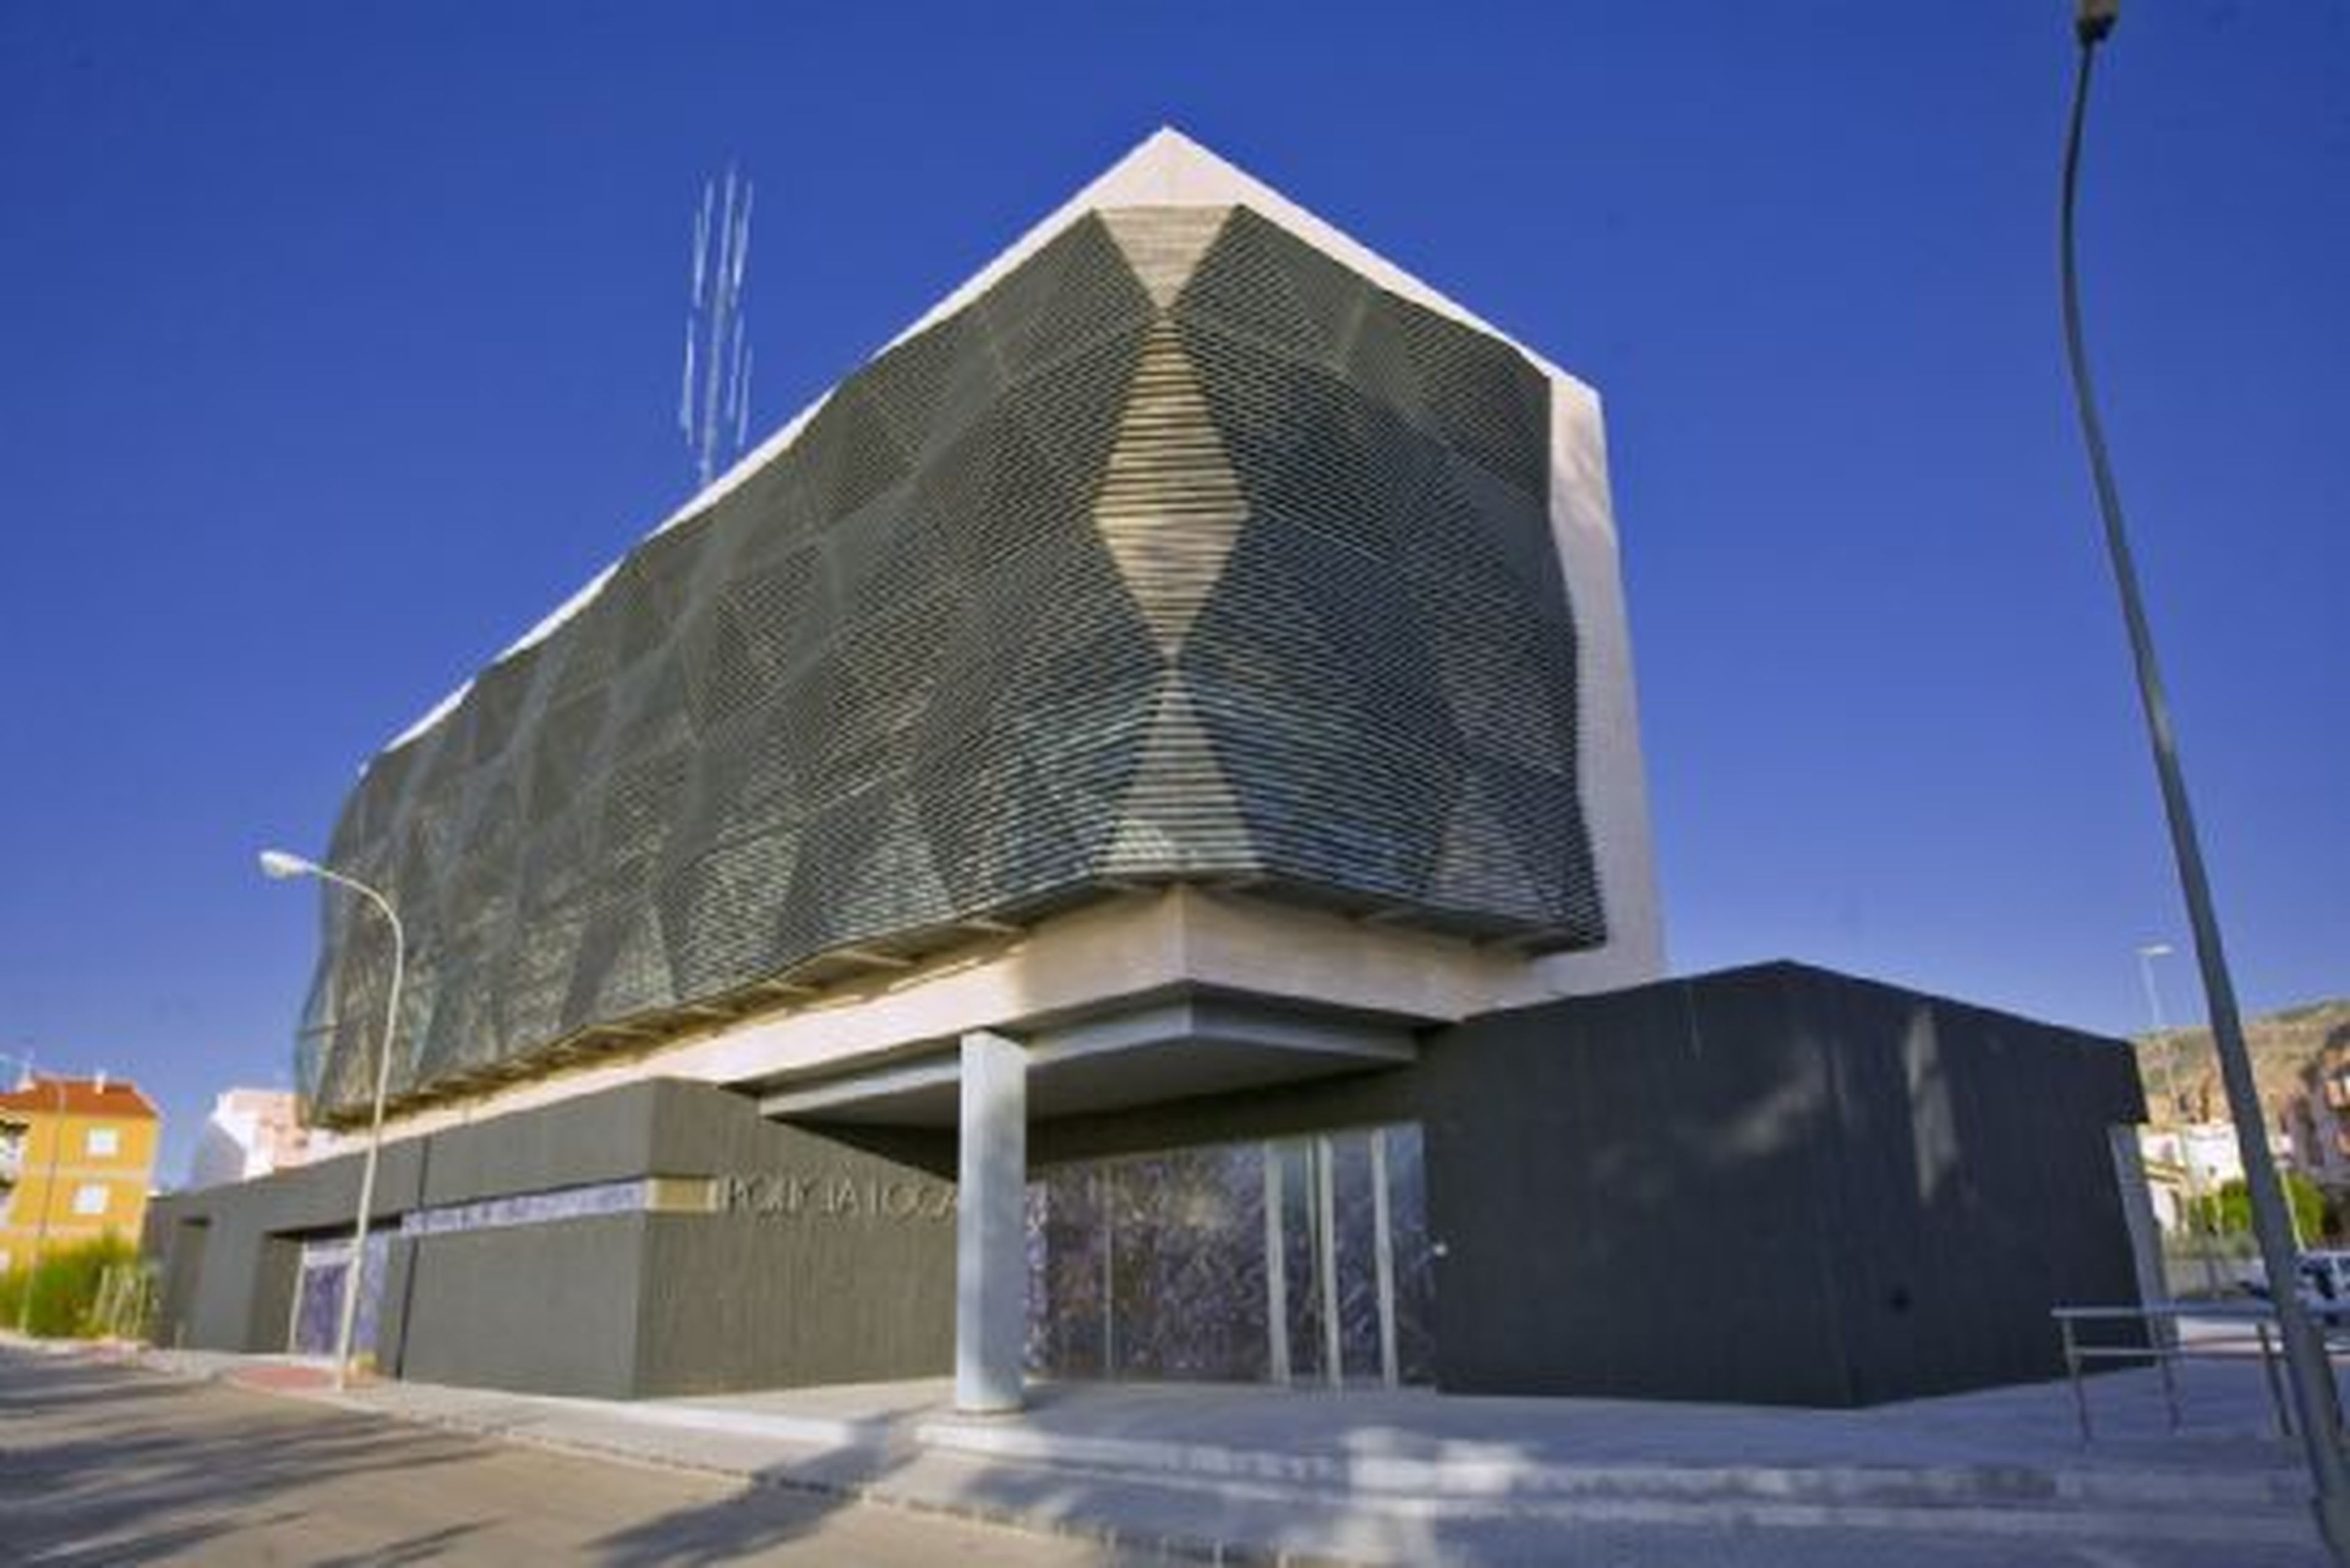 Cuartel de la policía local y protección civil, Alhama, Murcia.